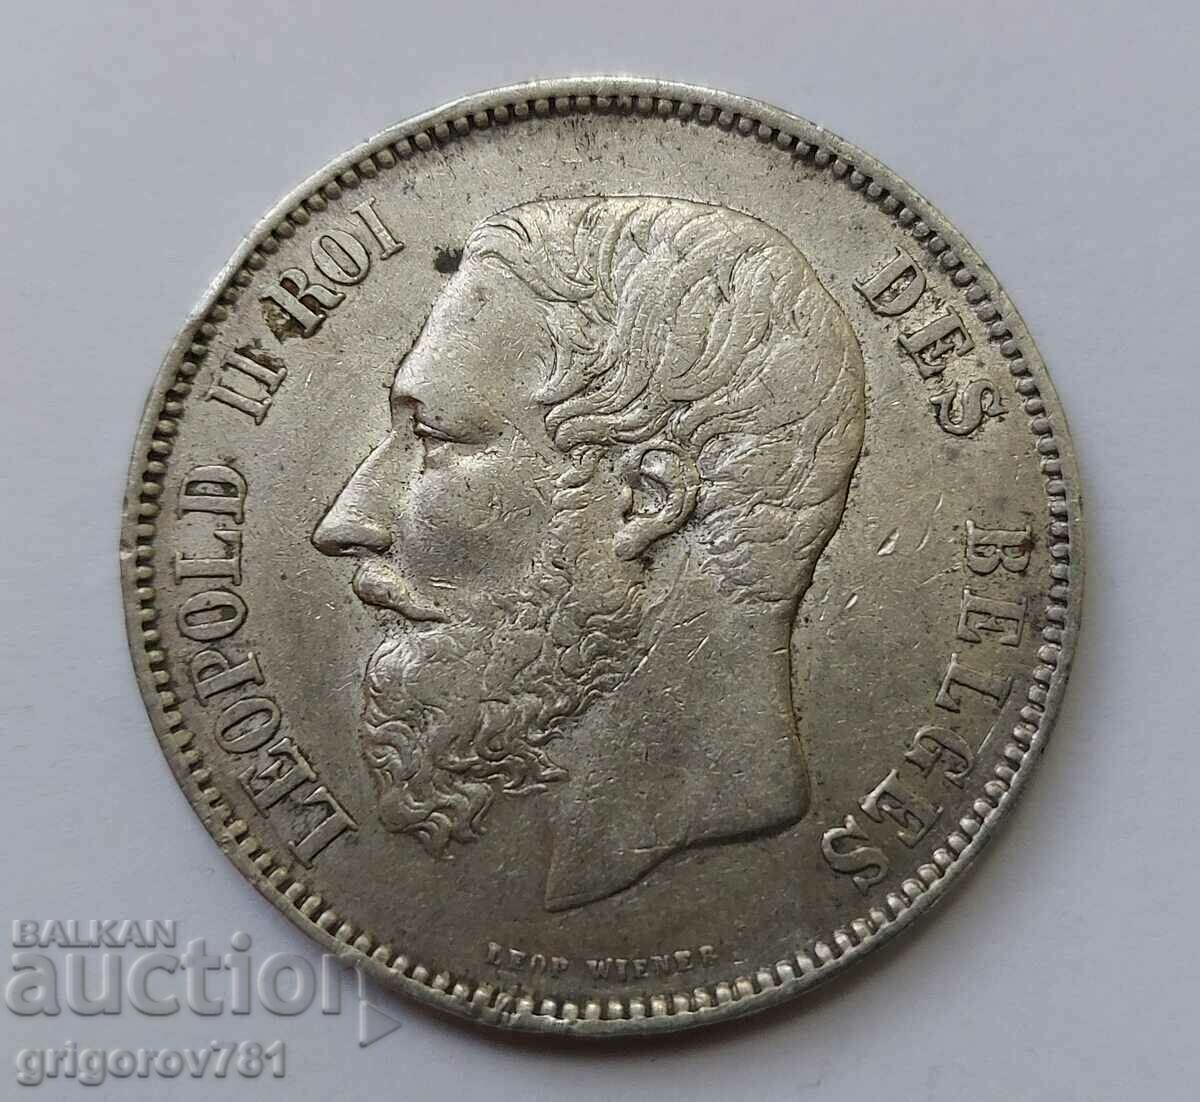 5 Francs Silver Belgium 1873 - Silver Coin #103